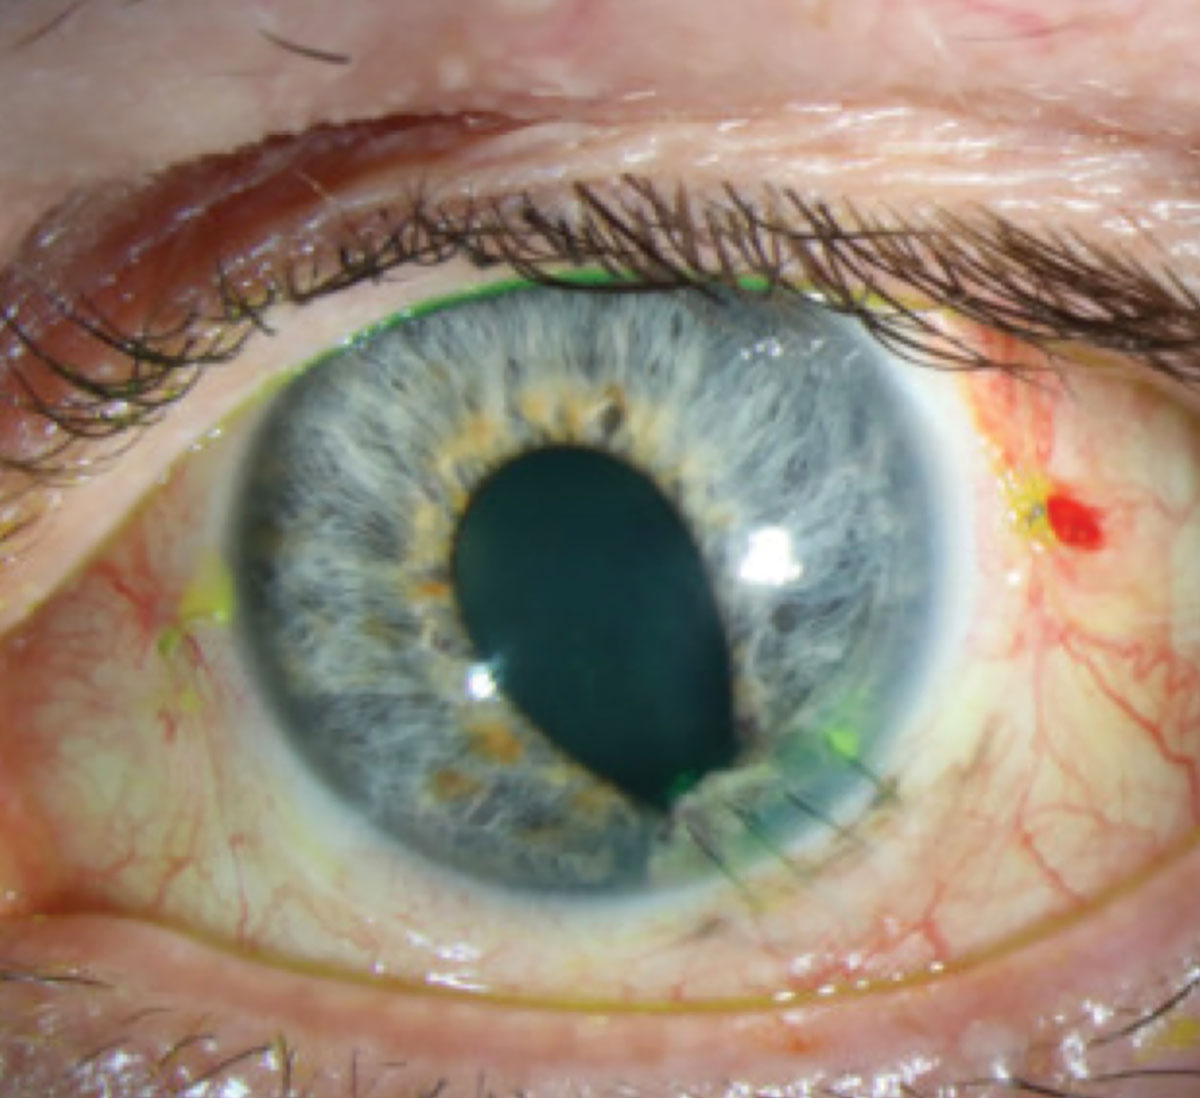 Fig. 5. Status post-repair of penetrating corneal injury with perforation.